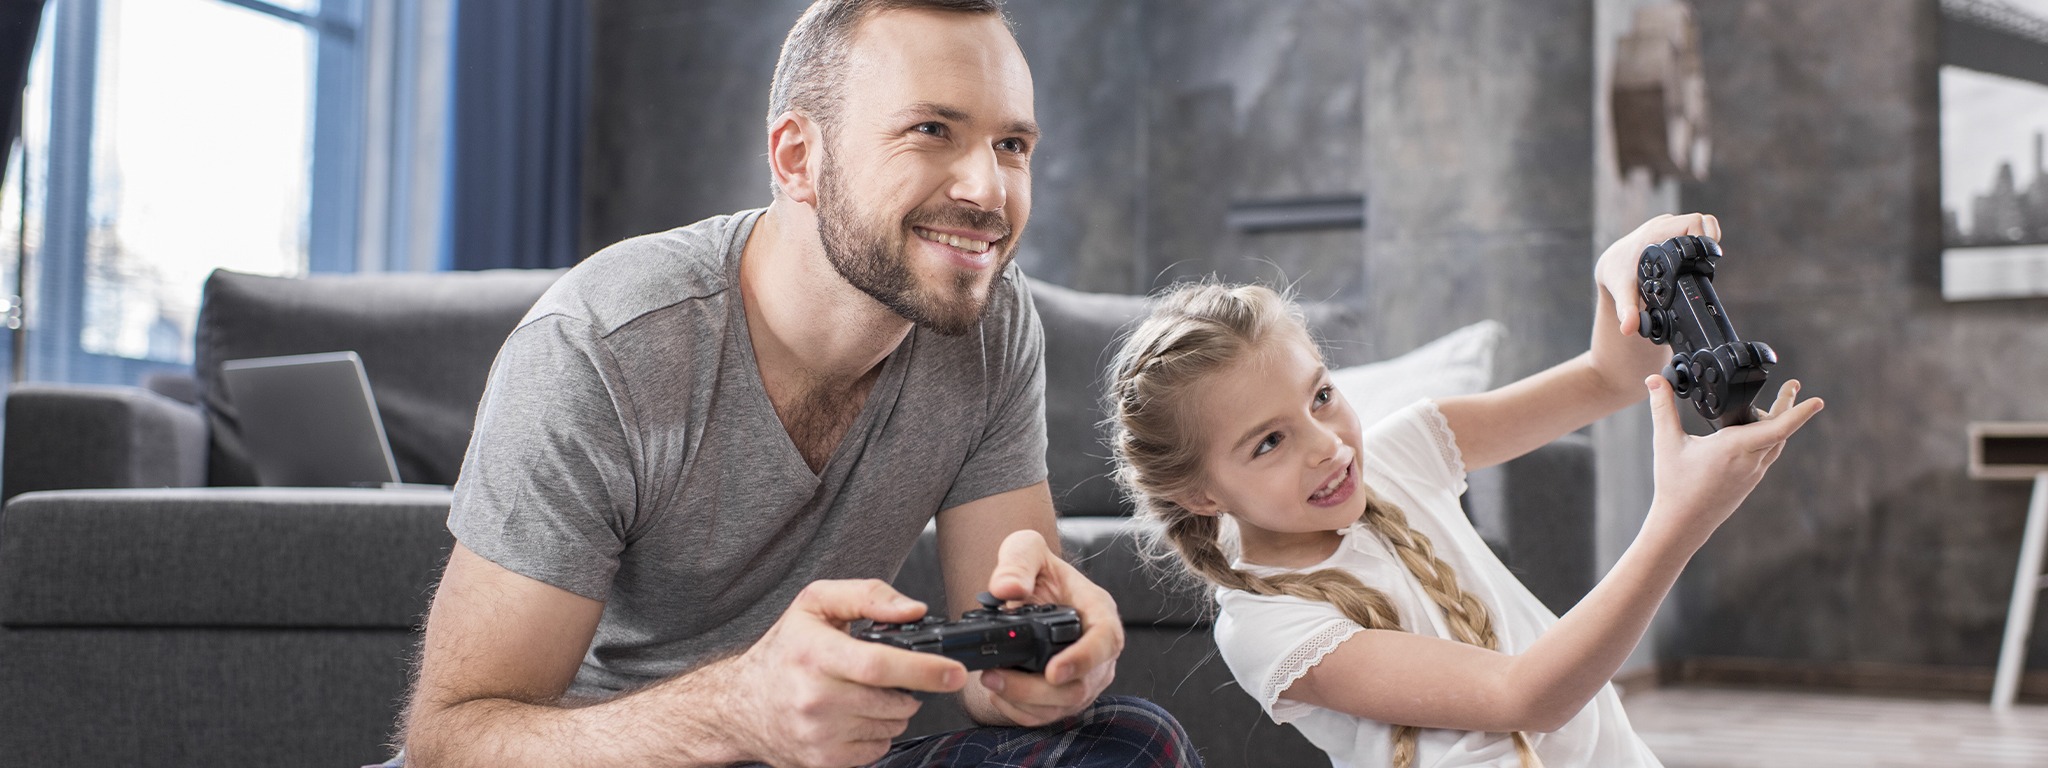 padre e hija sentados en la alfombra en casa jugando videojuegos